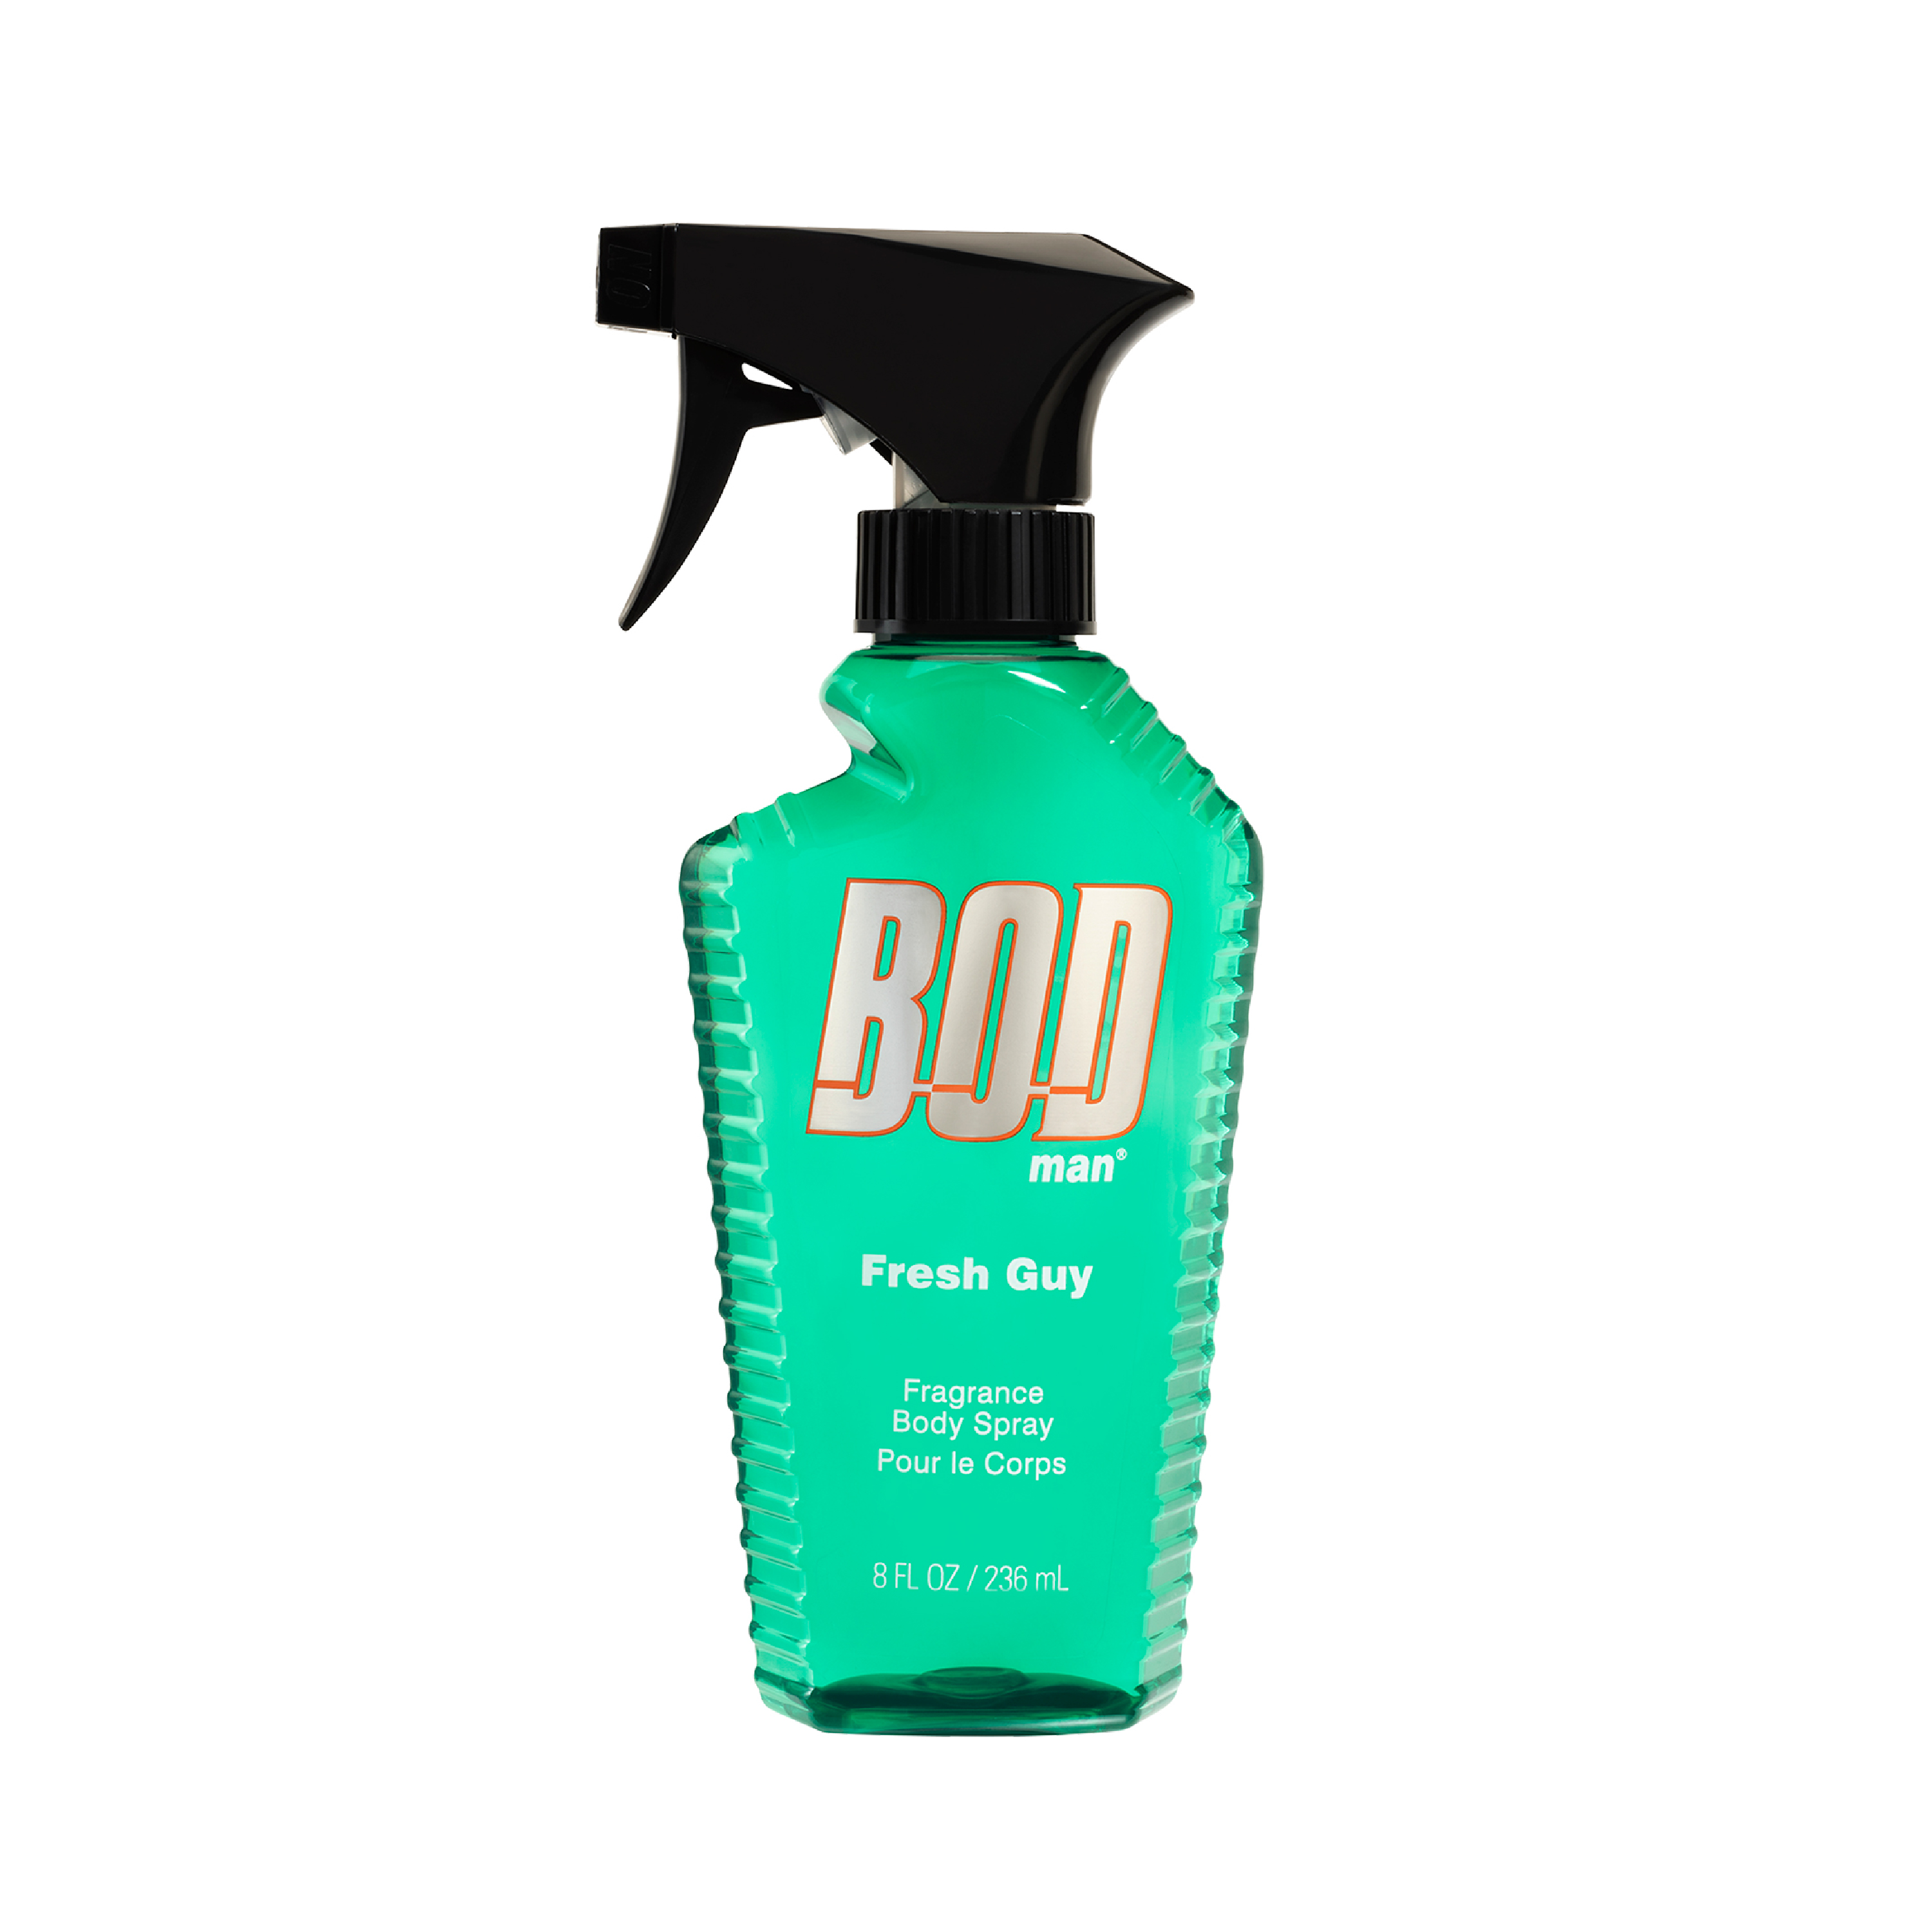 BOD man Fragrance Body Spray, Fresh Guy, 8 fl oz - image 1 of 7